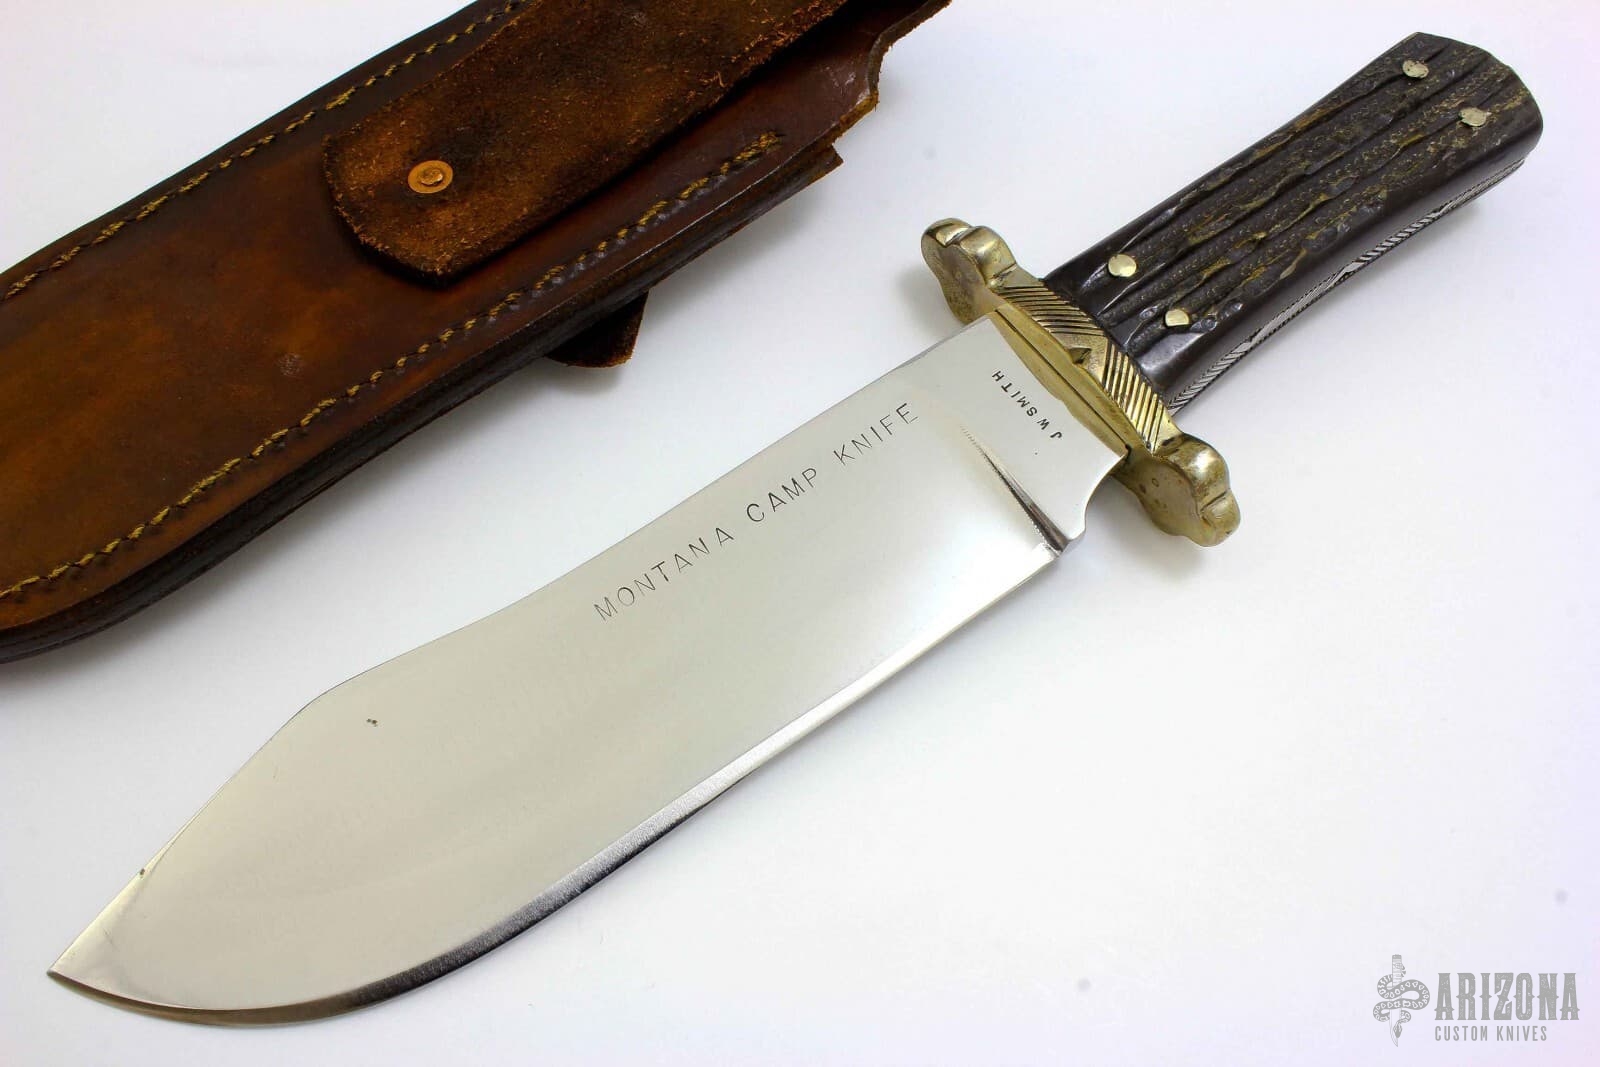 Montana Camp Knife Arizona Custom Knives